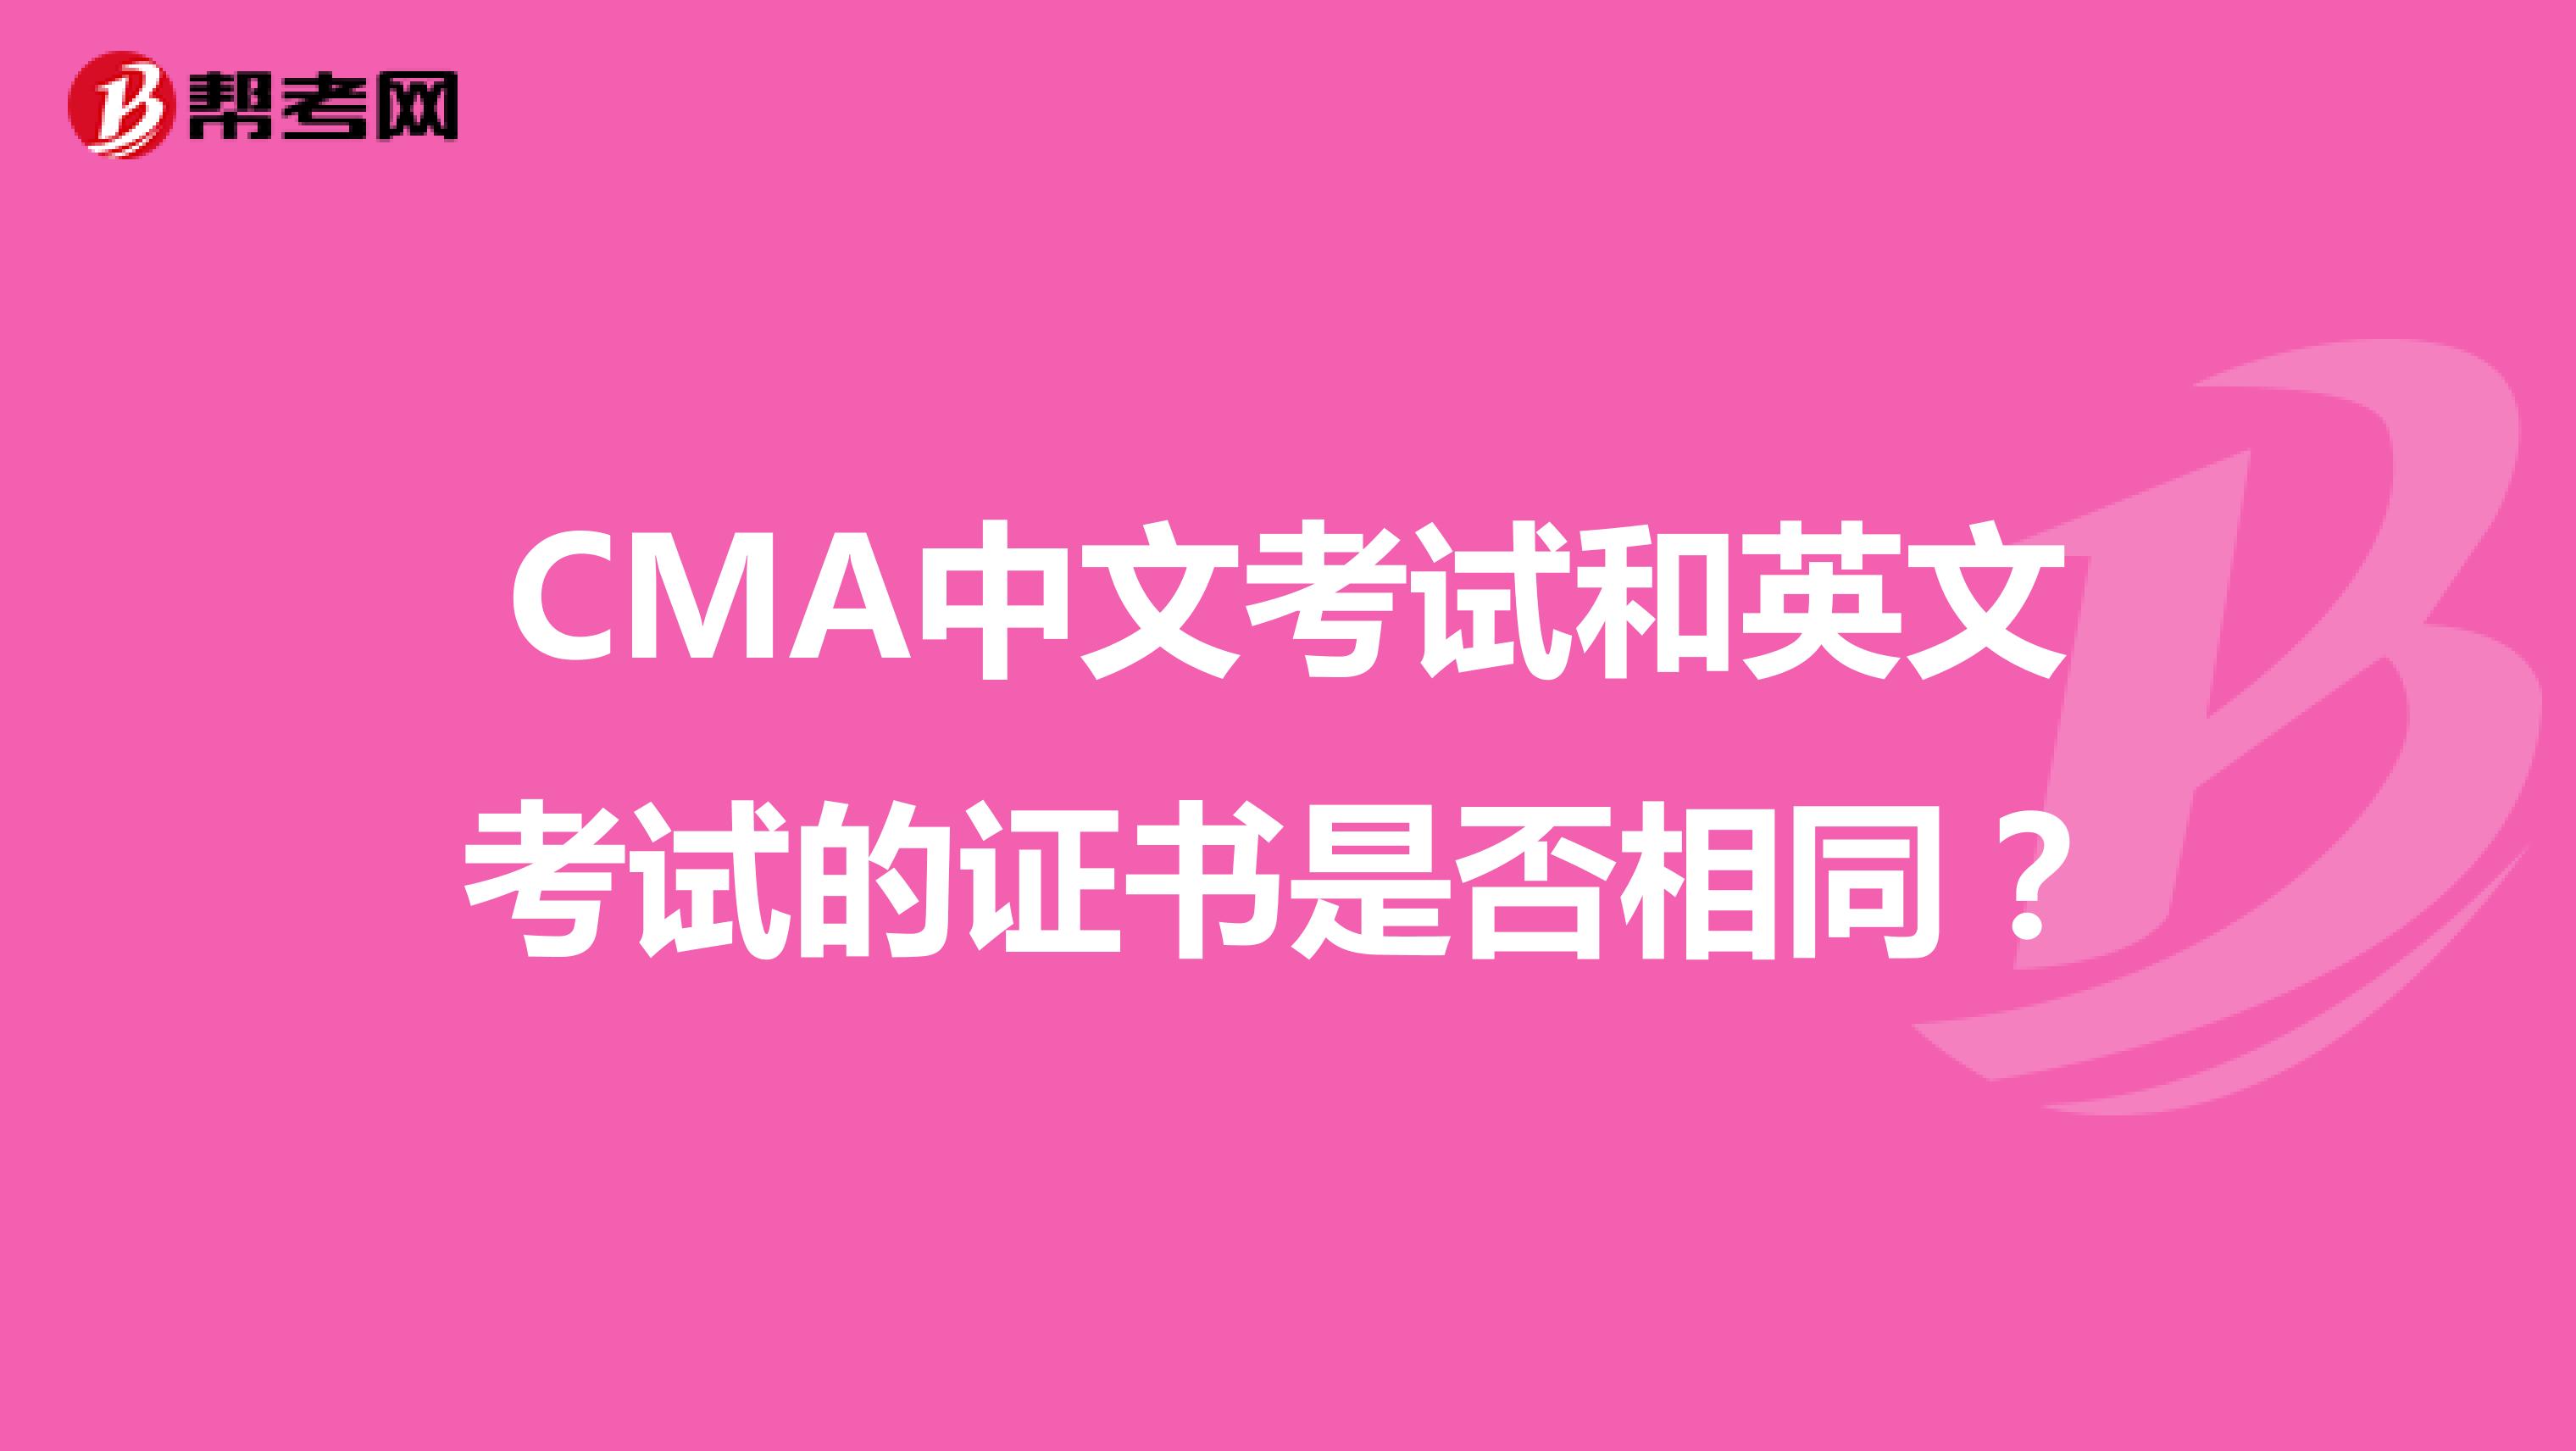 CMA中文考试和英文考试的证书是否相同？